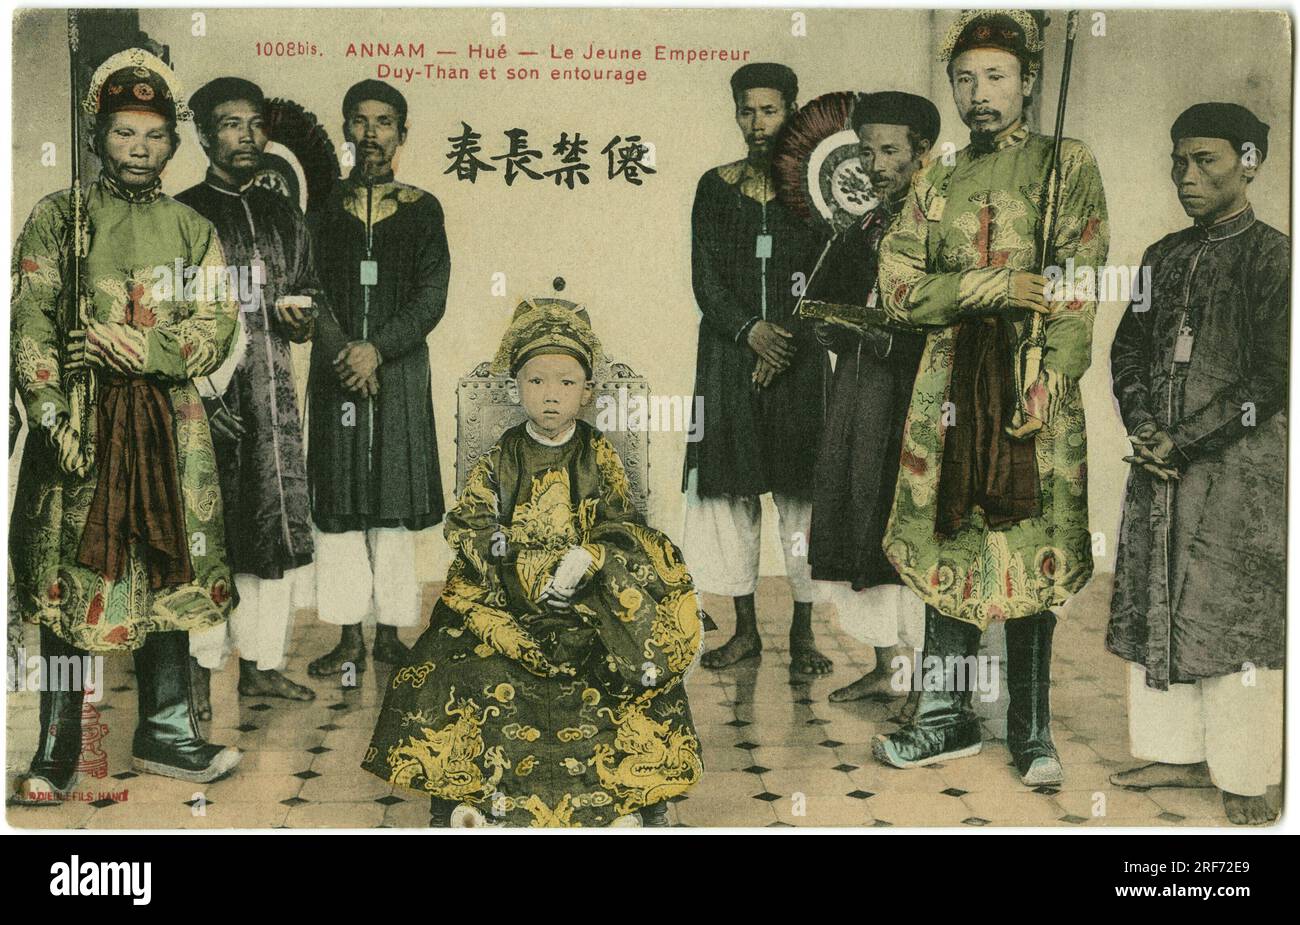 Portrait du Jeune empereur Duy-Than et de son Entourage ein Farbton dans le Annam au Vietnam, en Indochine Francaise. Carte postale, 1908, Paris. Stockfoto